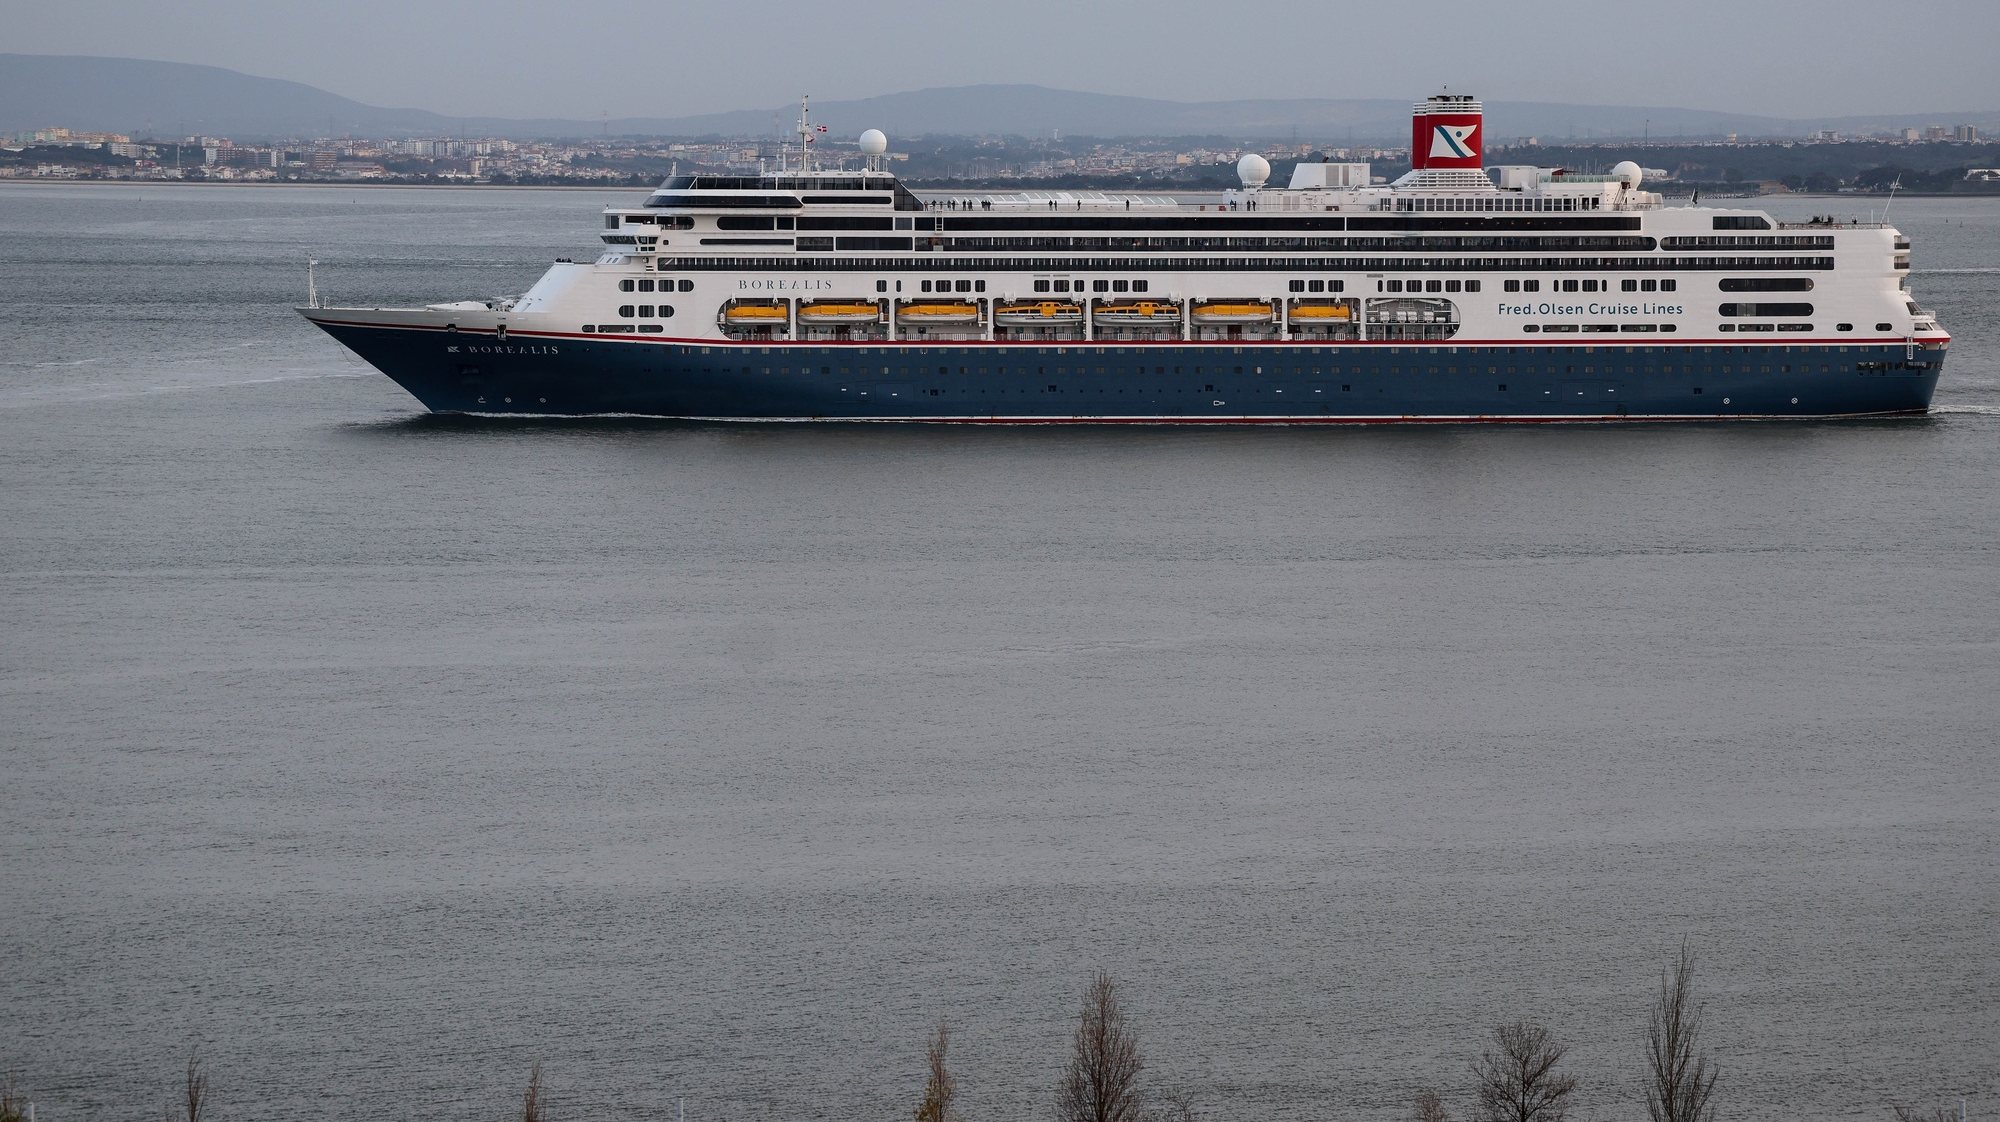 Rio Tejo em Lisboa com navio de cruzeiro, 16 de março de 2023. TIAGO PETINGA/LUSA